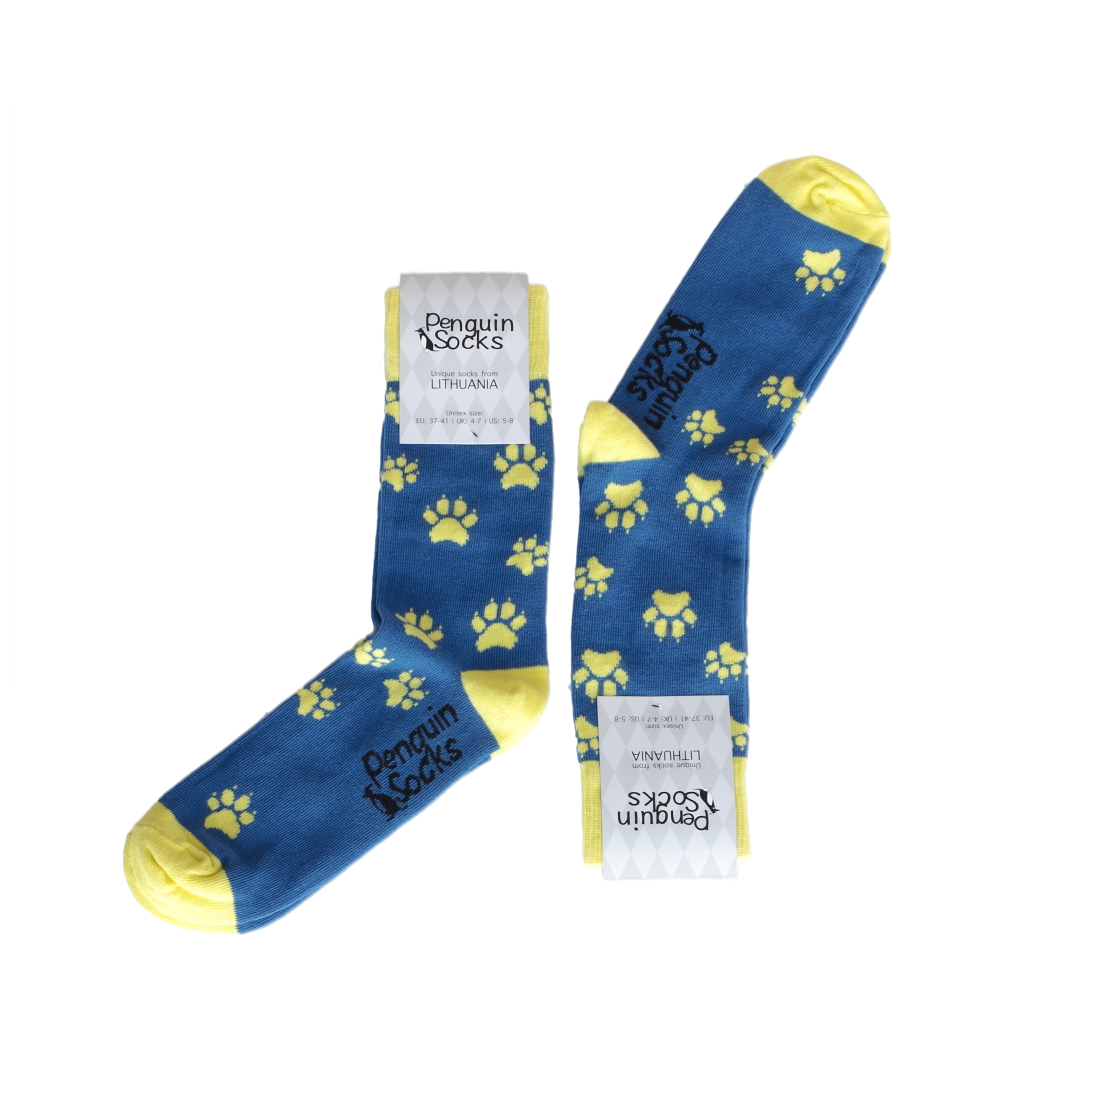 Šuniuko pėdutės - Linksmos kojinės (Penguin socks)